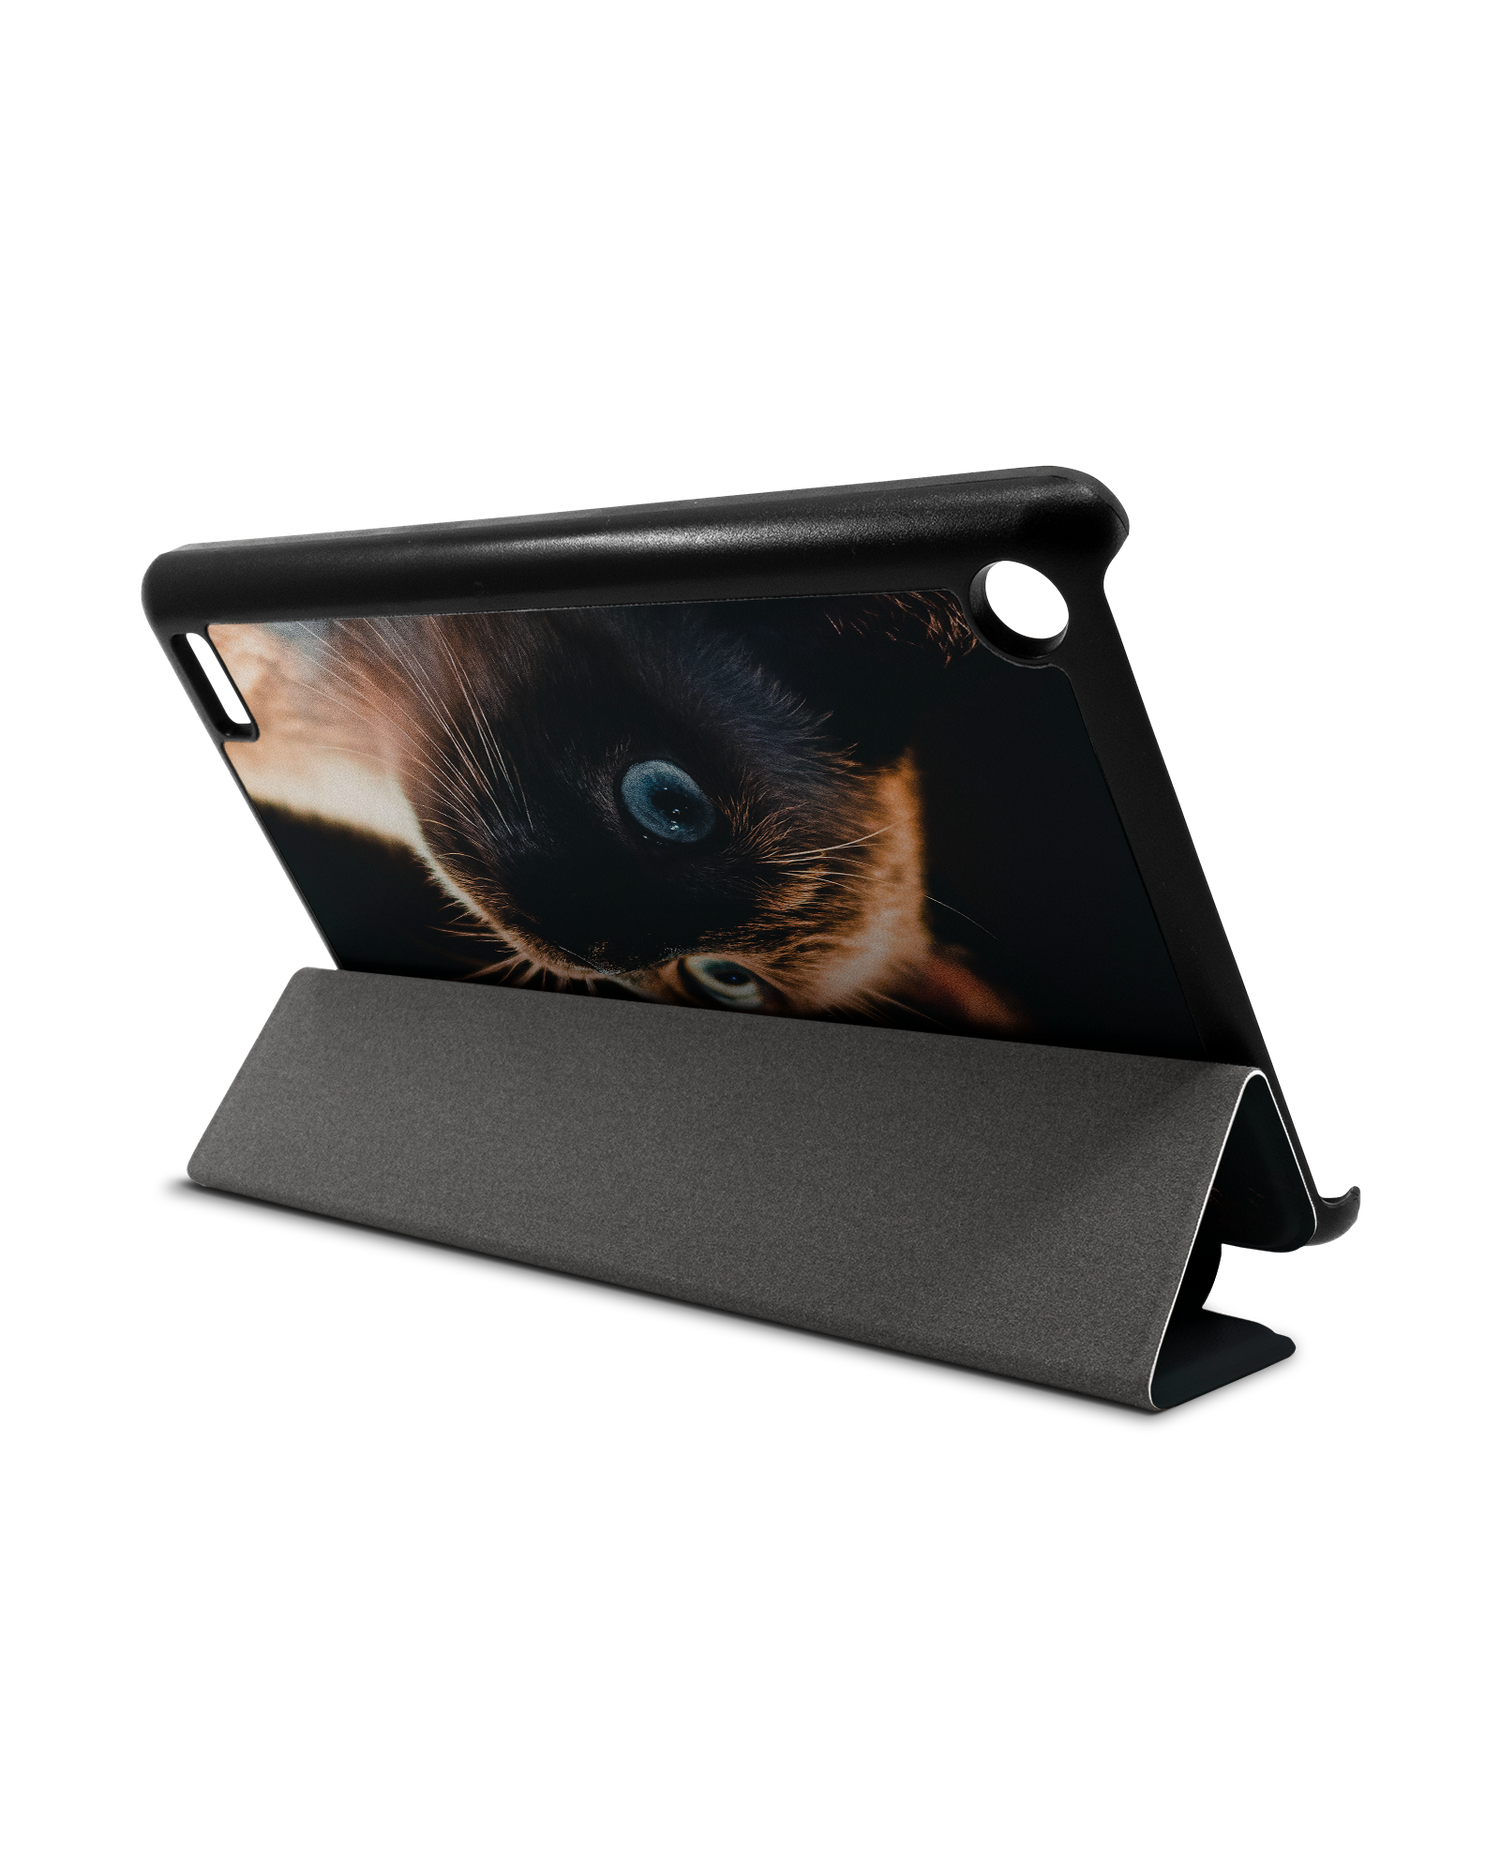 Siamese Cat Tablet Smart Case für Amazon Fire 7: Aufgestellt im Querformat